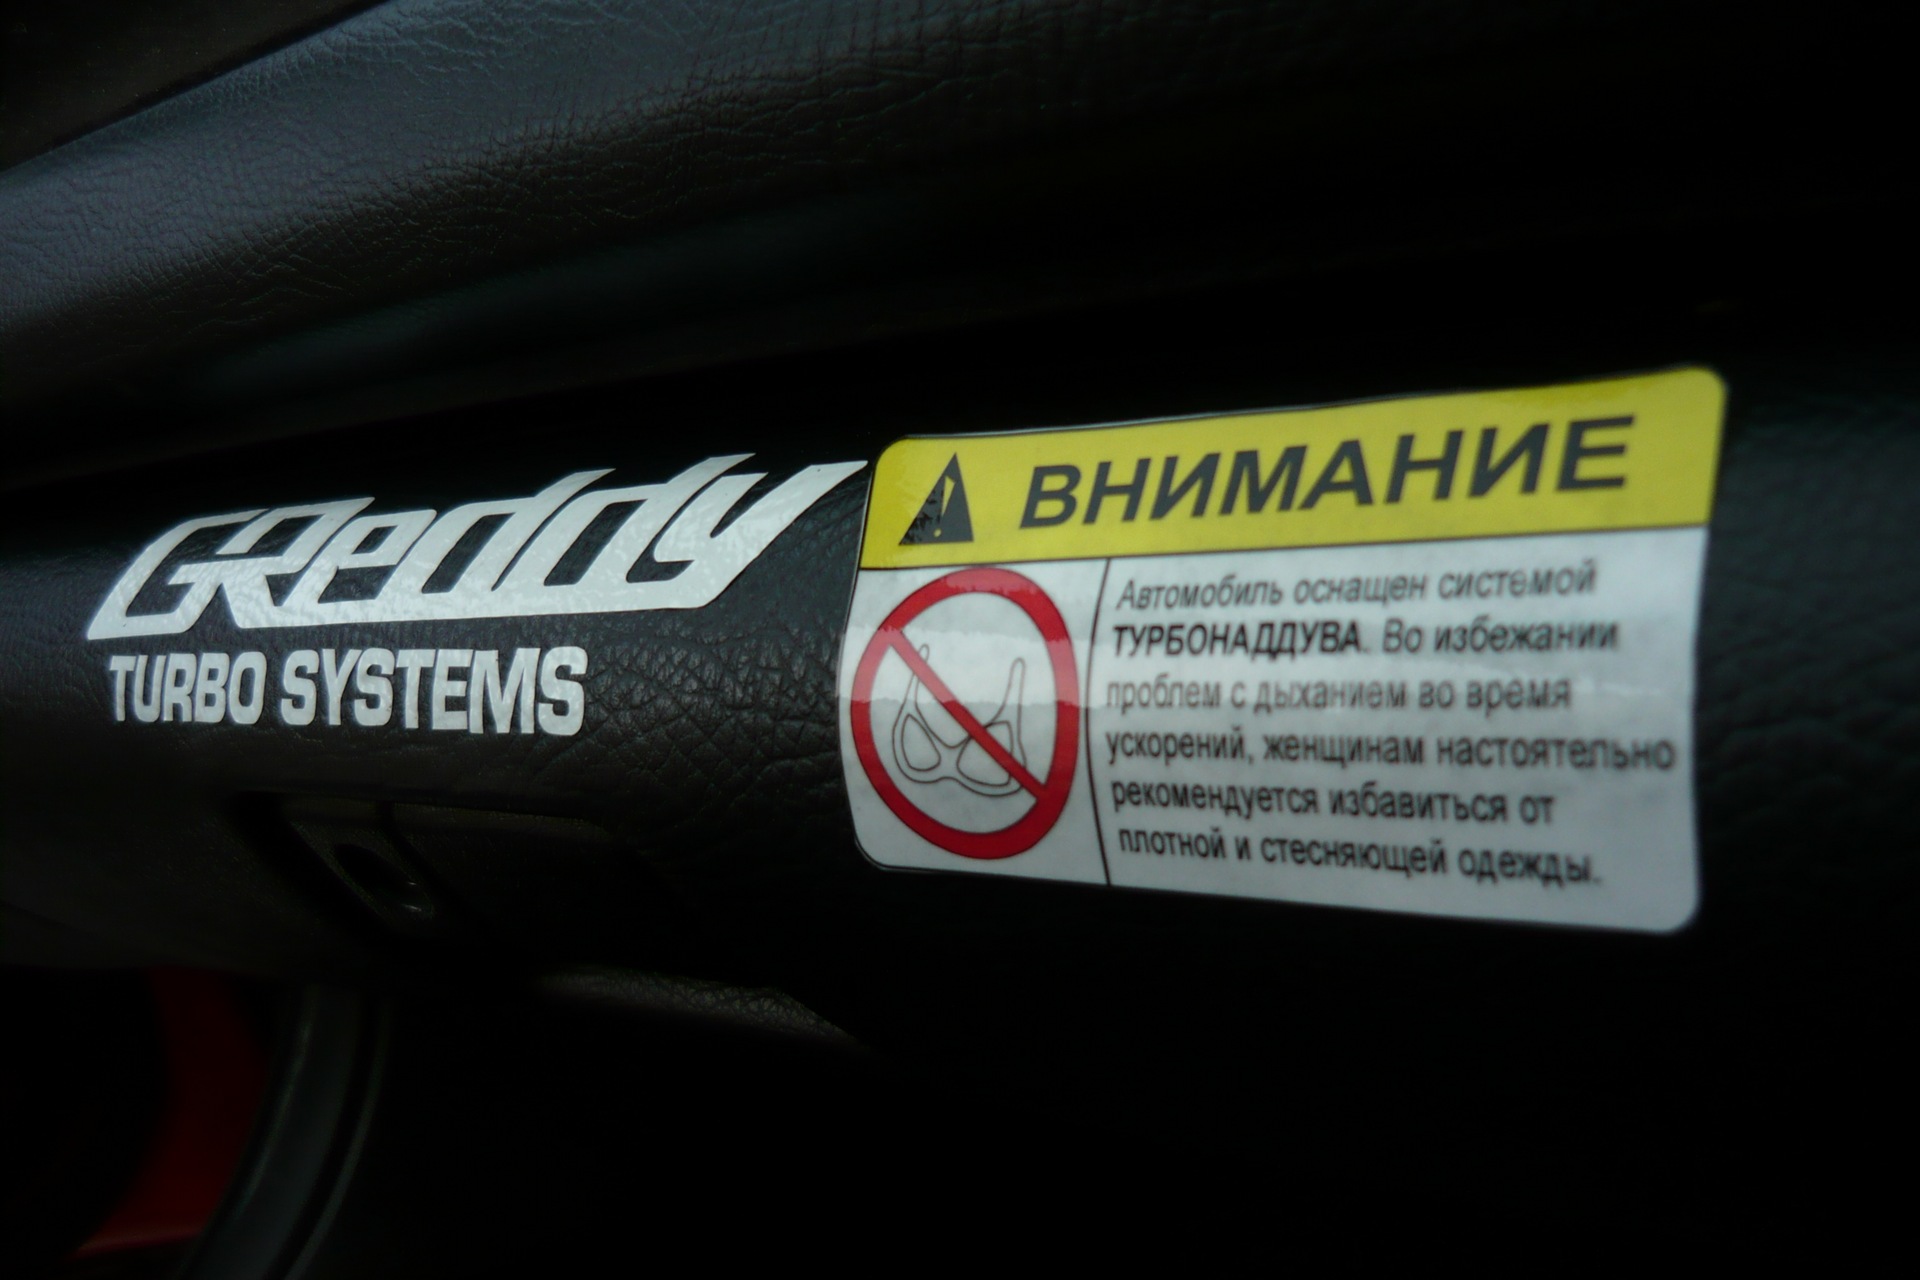 Attention system. Внимание автомобиль оснащен системой турбонаддува наклейка.